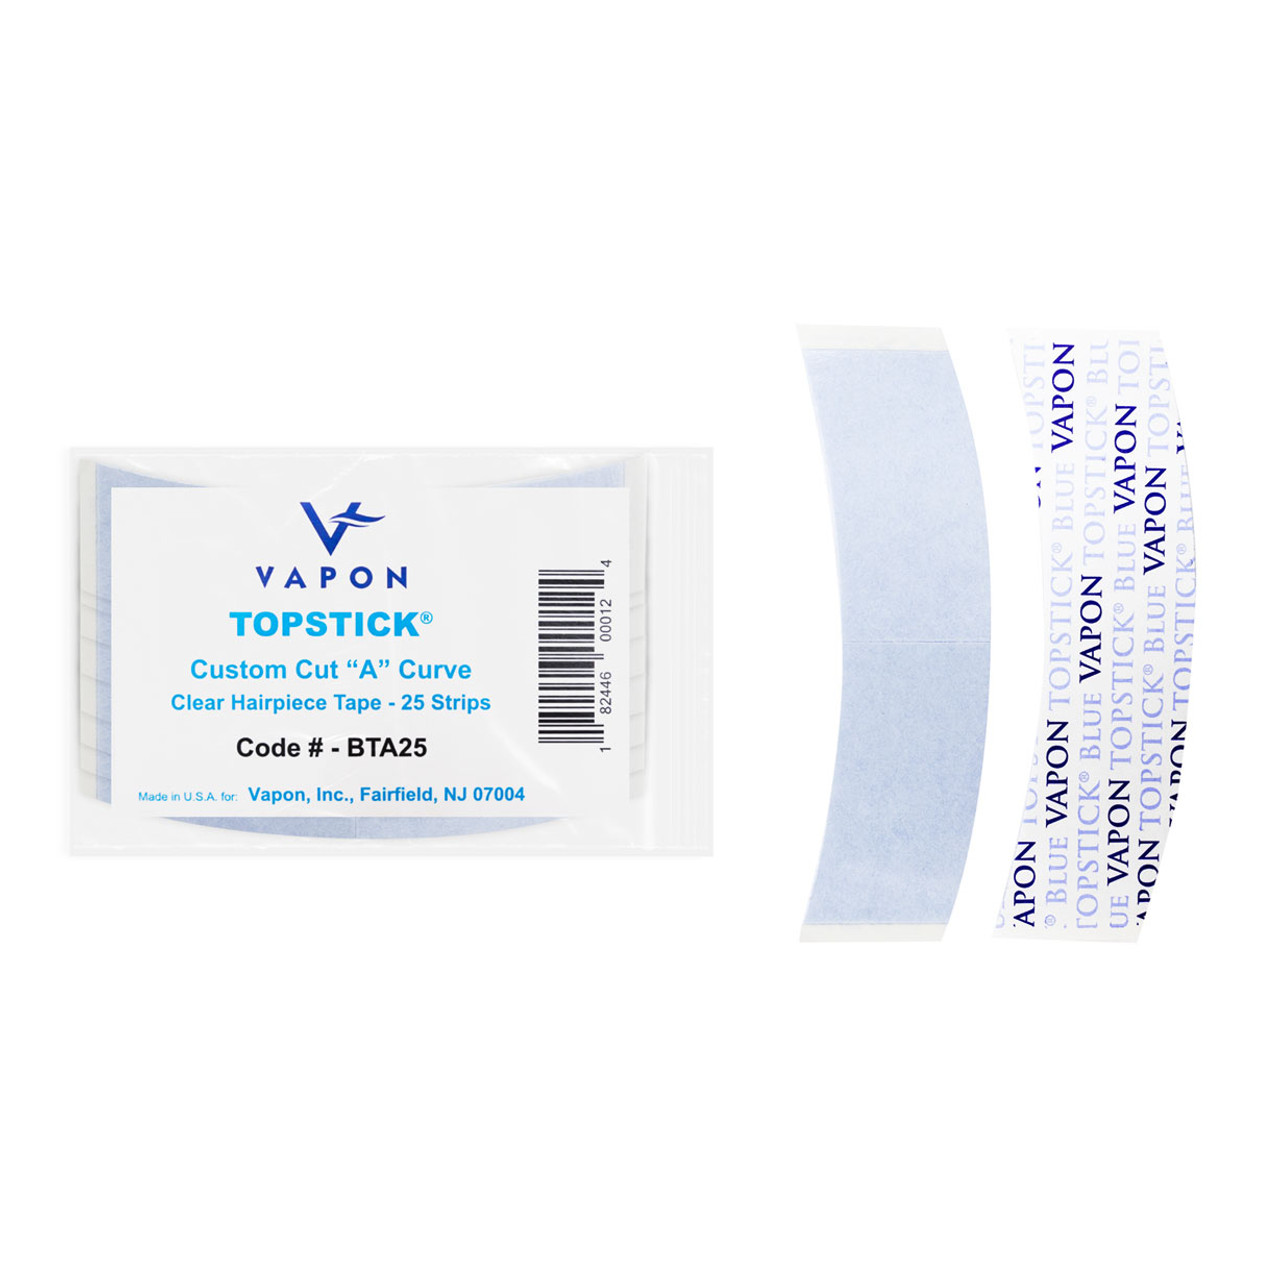 Vapon Topstick Men's Grooming Tape 1 x 3